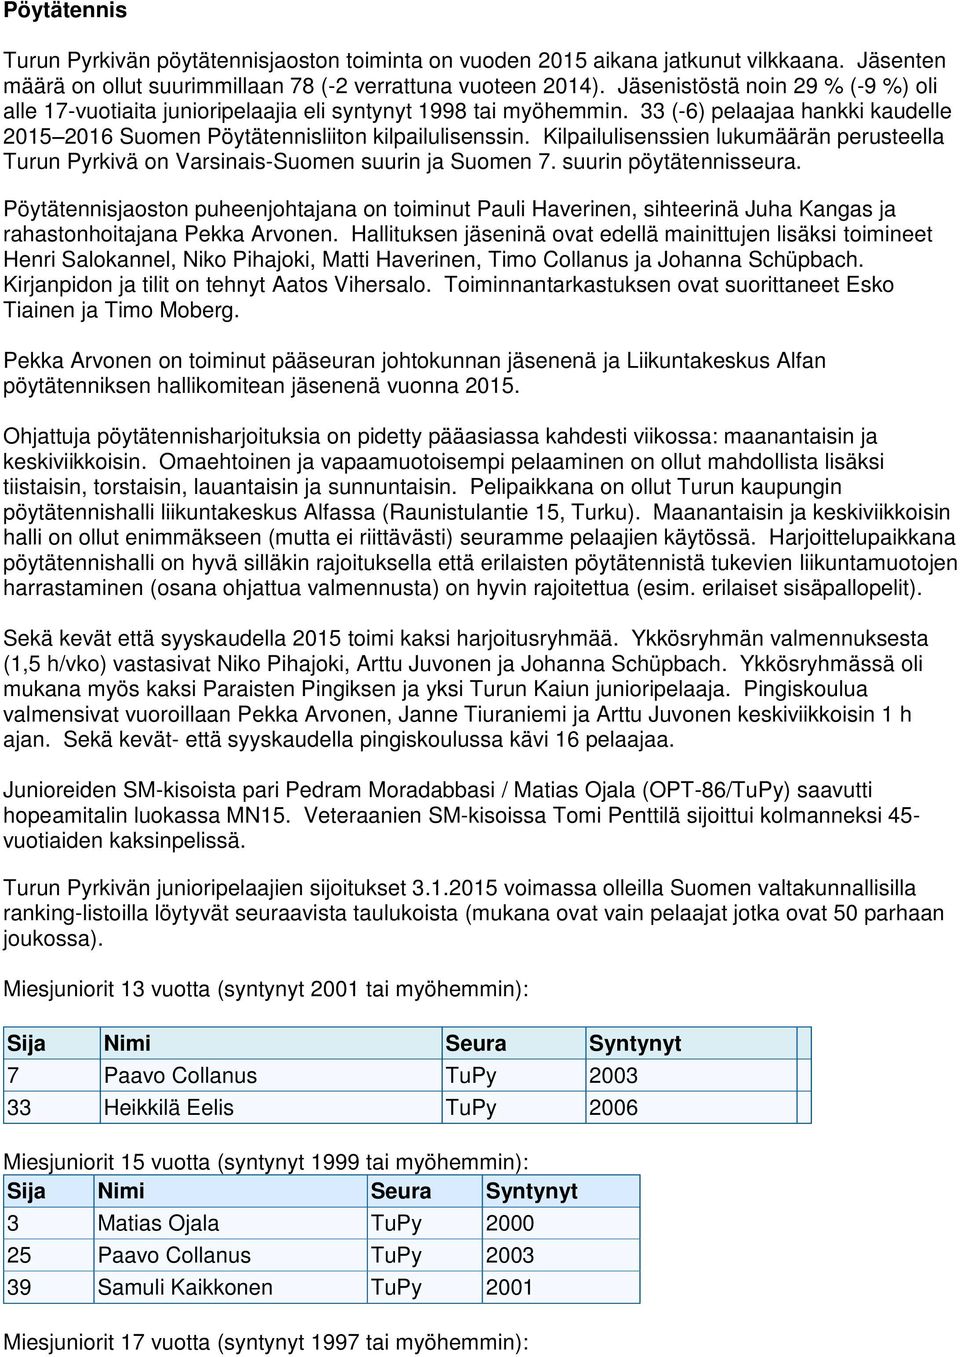 Kilpailulisenssien lukumäärän perusteella Turun Pyrkivä on Varsinais-Suomen suurin ja Suomen 7. suurin pöytätennisseura.